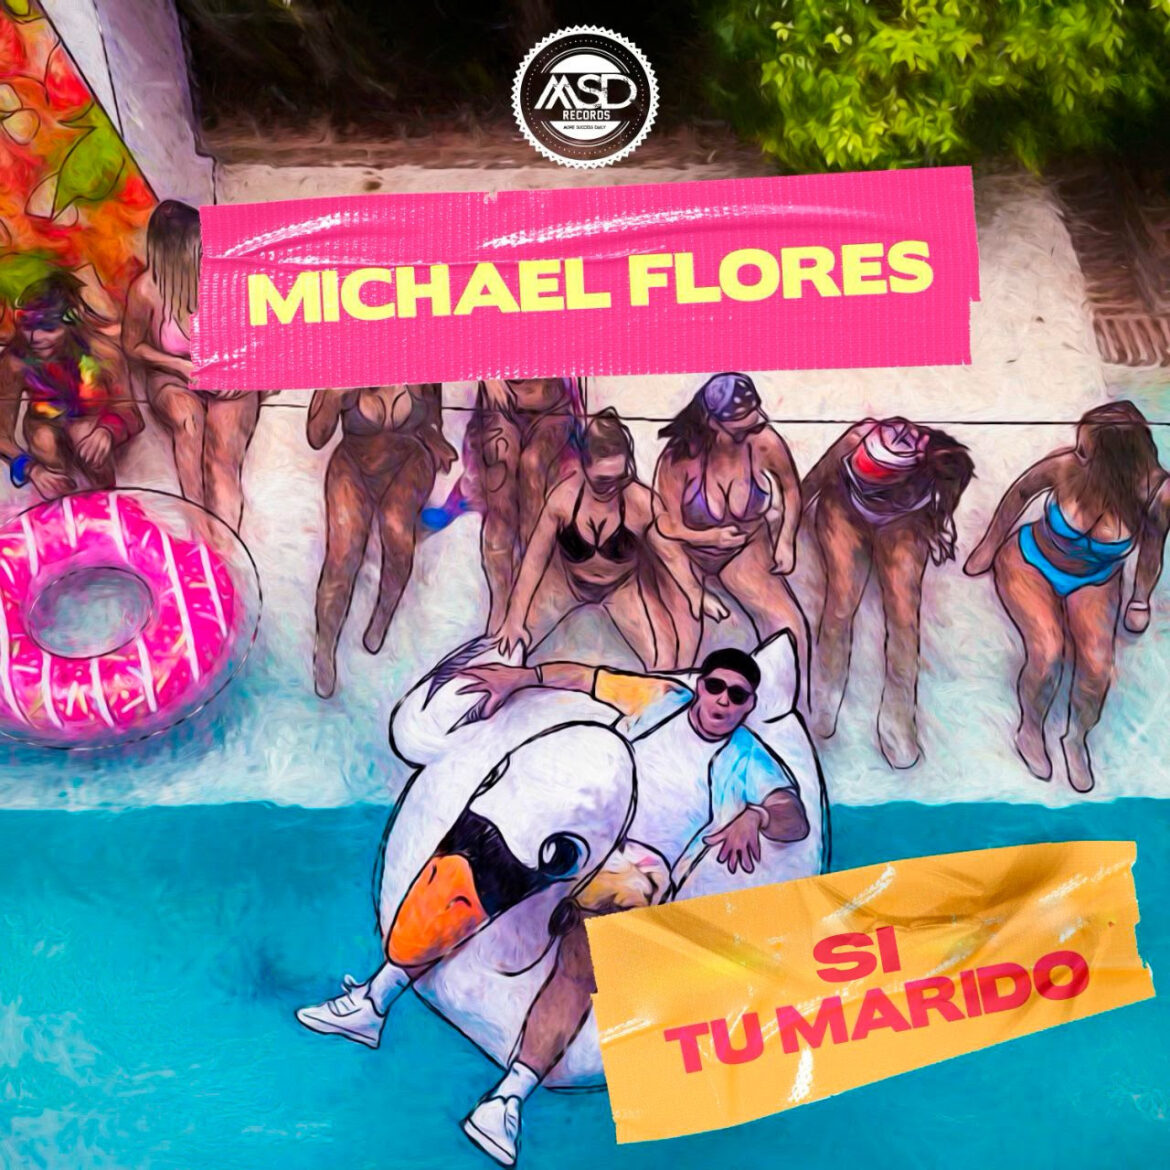 Michael Flores se presenta como un artista estrenando su nuevo sencillo “Si  tu marido” al ritmo del dembow dominicano - AmaRie Magazine